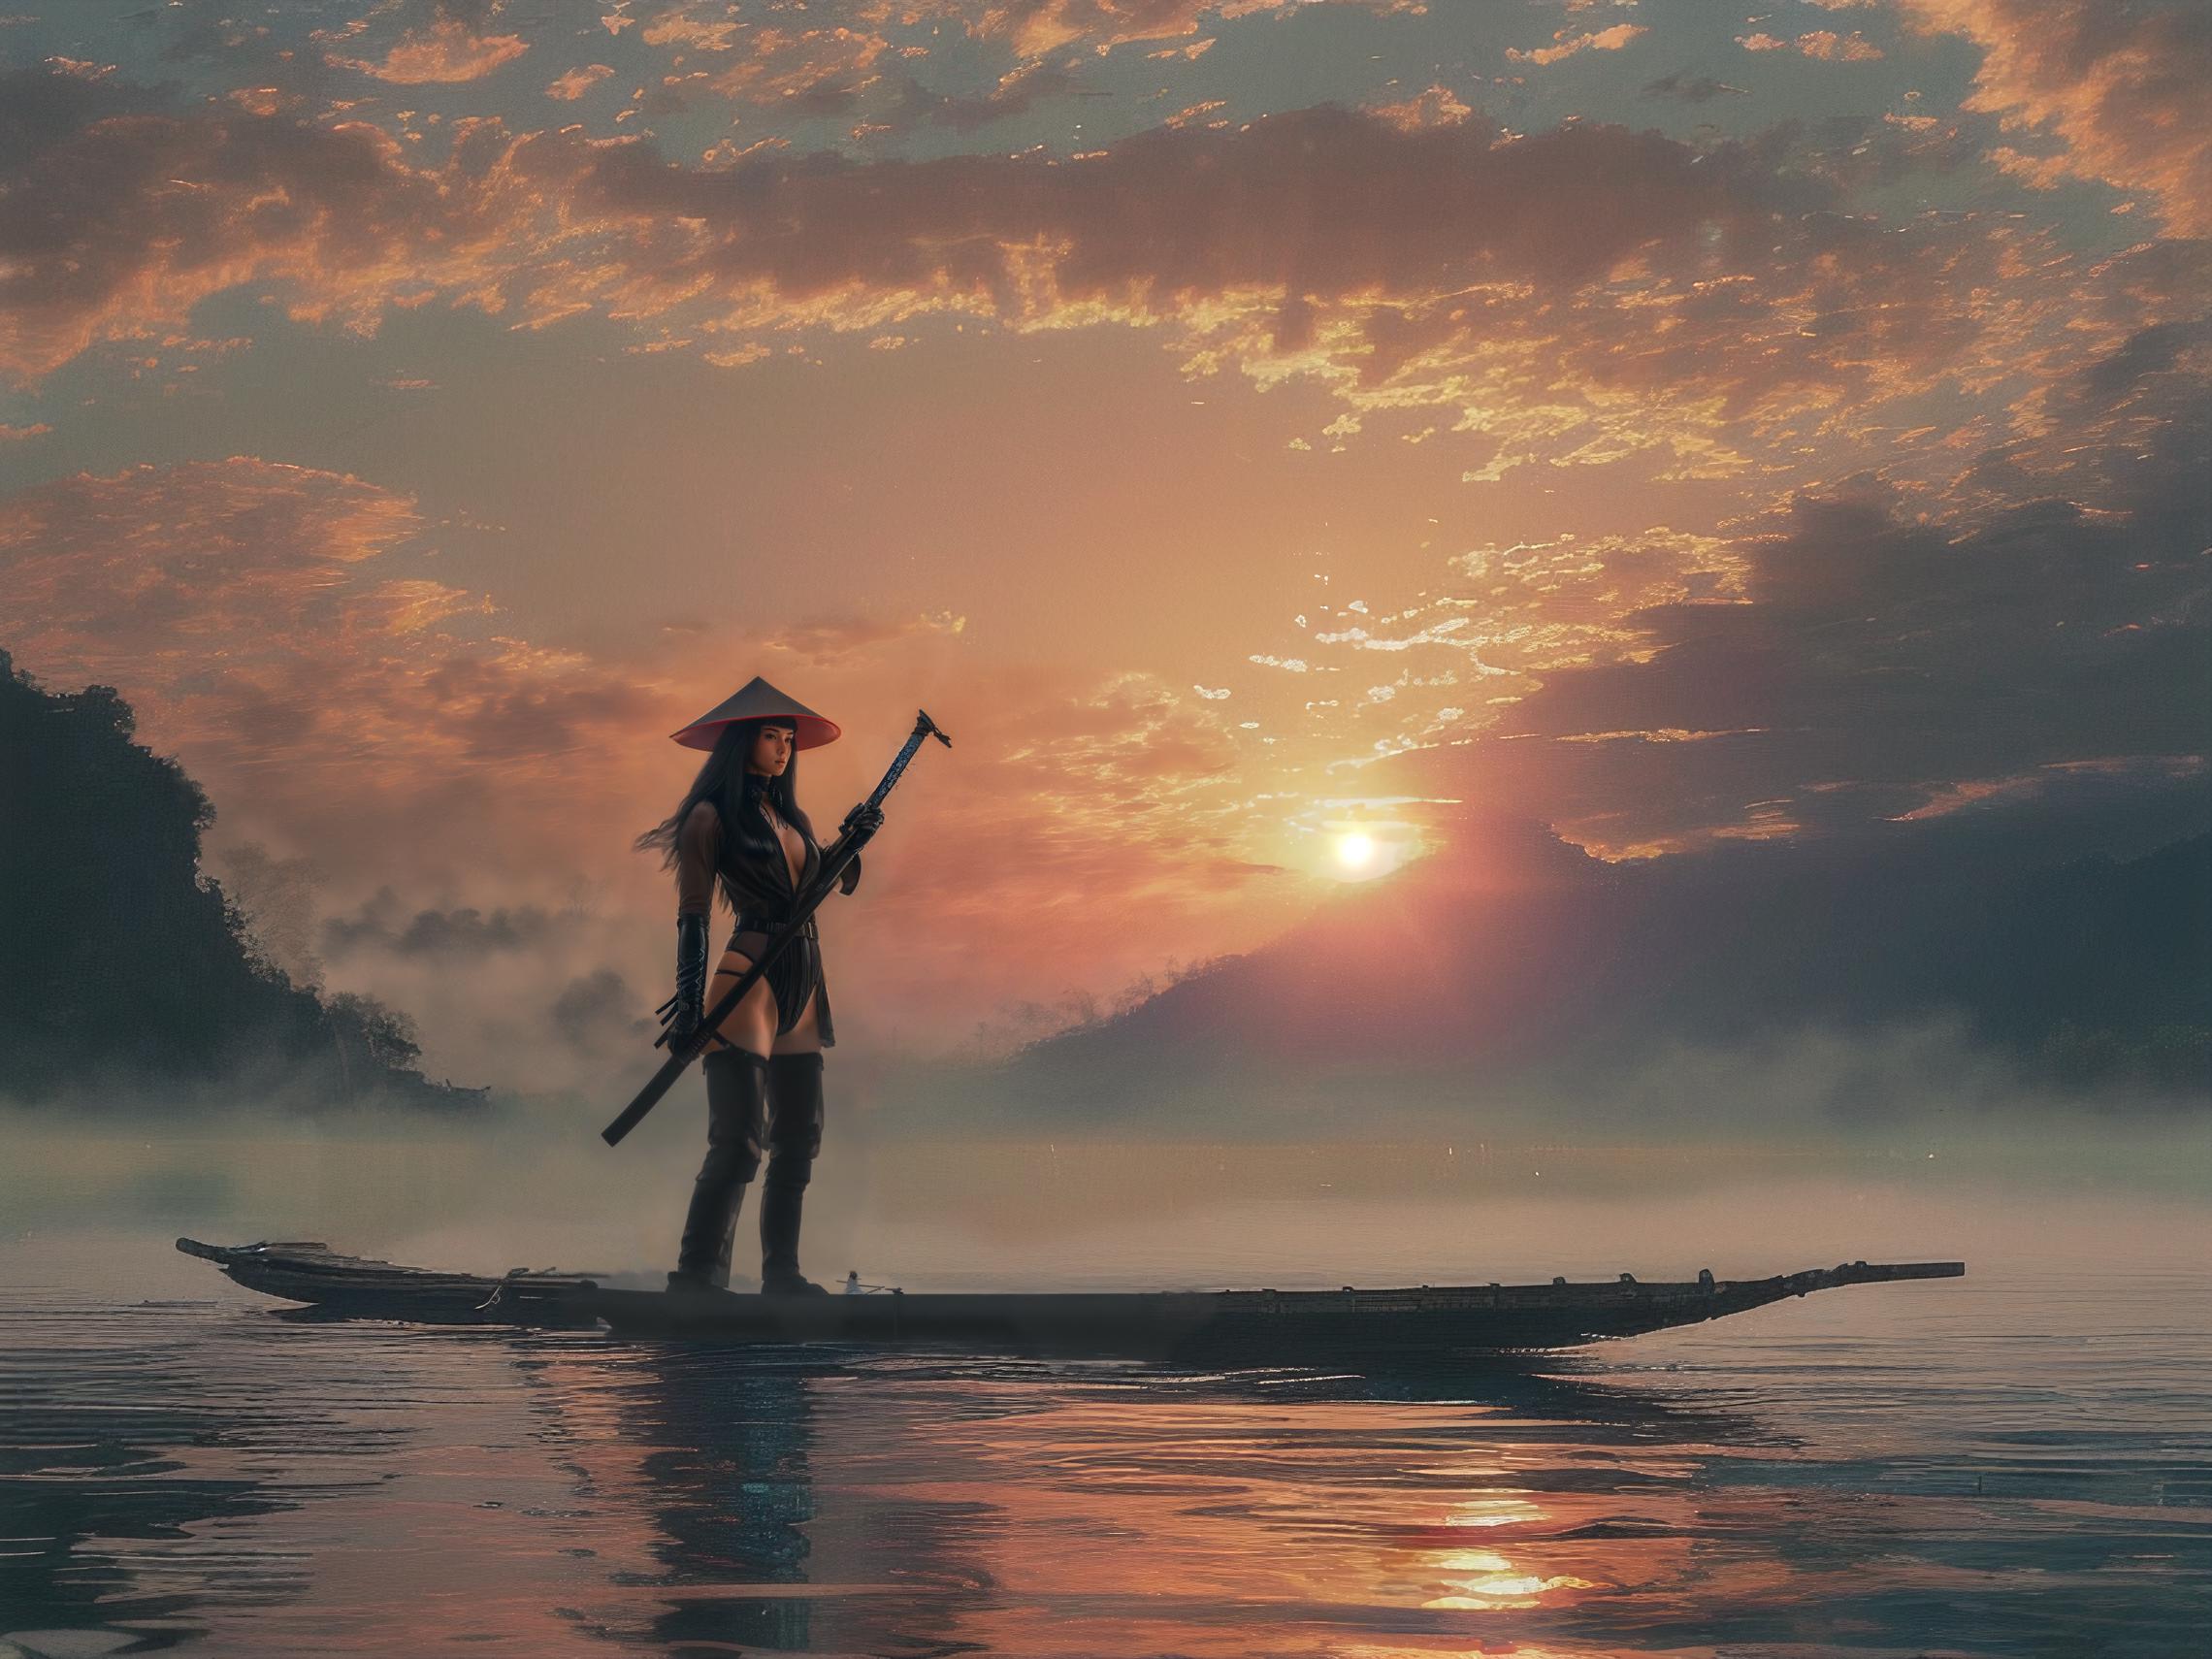 绪儿-山水渔夫 long raft with Landscape fisherman image by kia2200